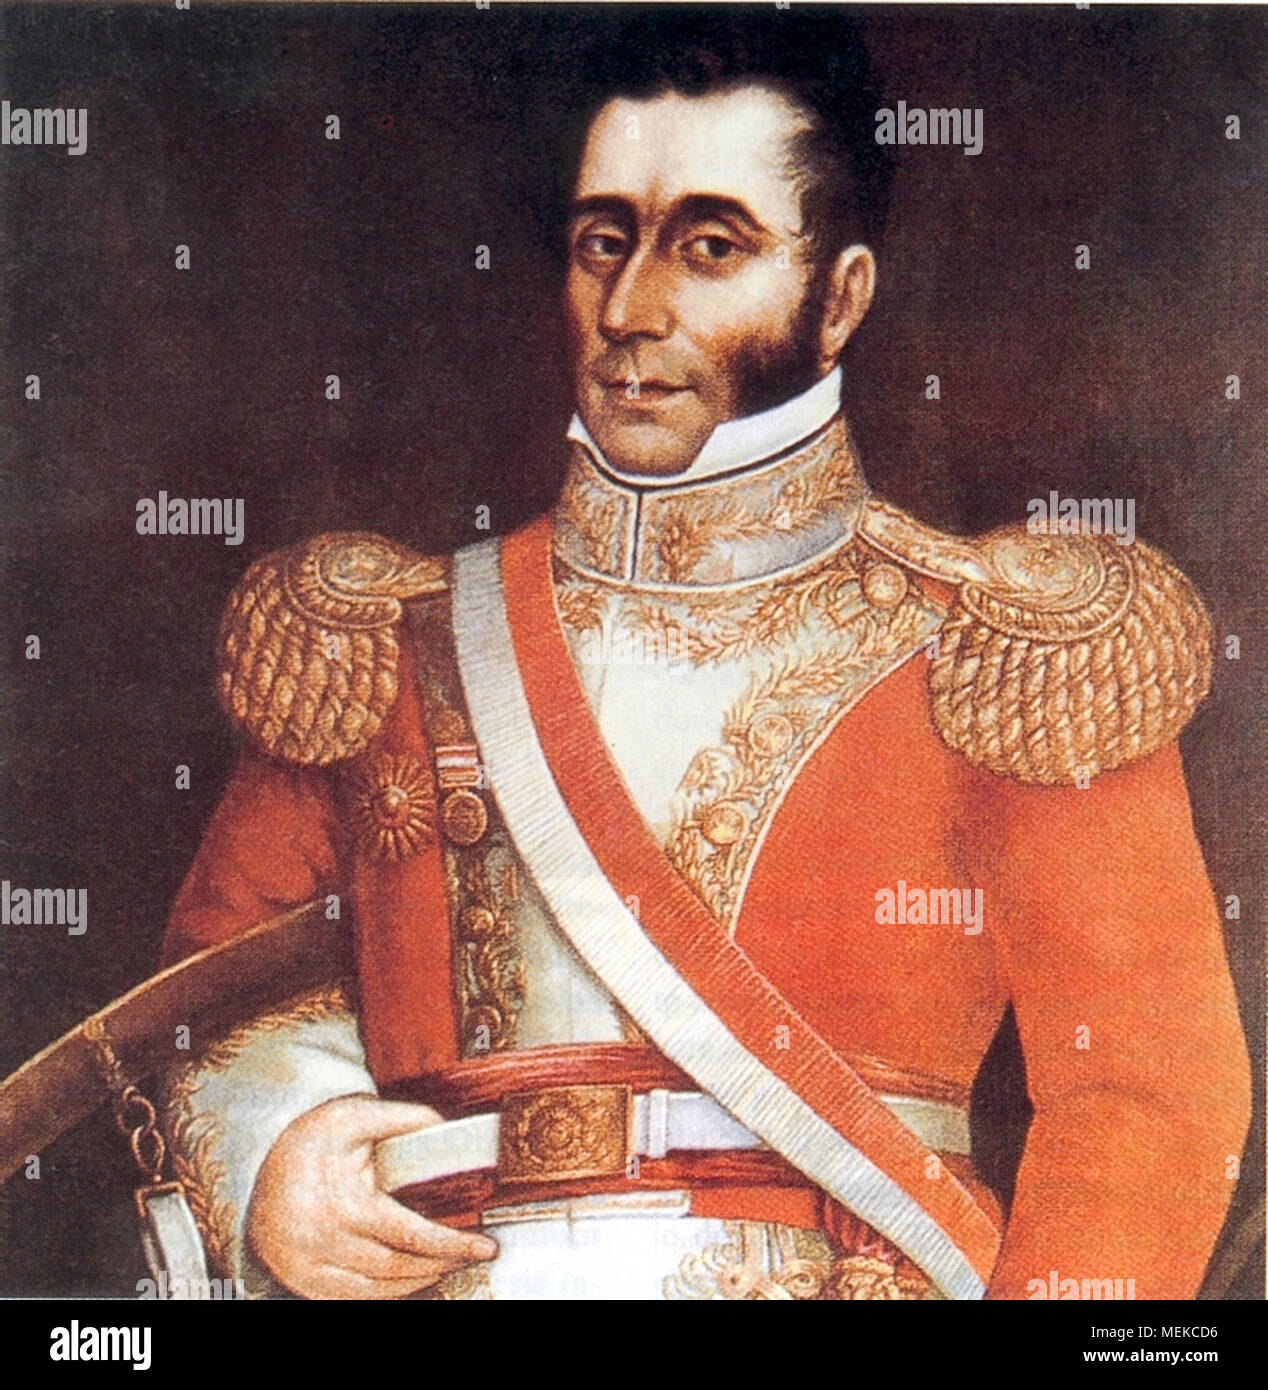 José Bernardo de Tagle Portocarrero y, die iv Marquis von Torre Tagle (1779-1825), peruanischer Soldat und Politiker, der in der Zwischenzeit Präsident von Peru im Jahr 1823 sowie der fünfte Präsident Perus diente von 1823 bis 1824. Stockfoto